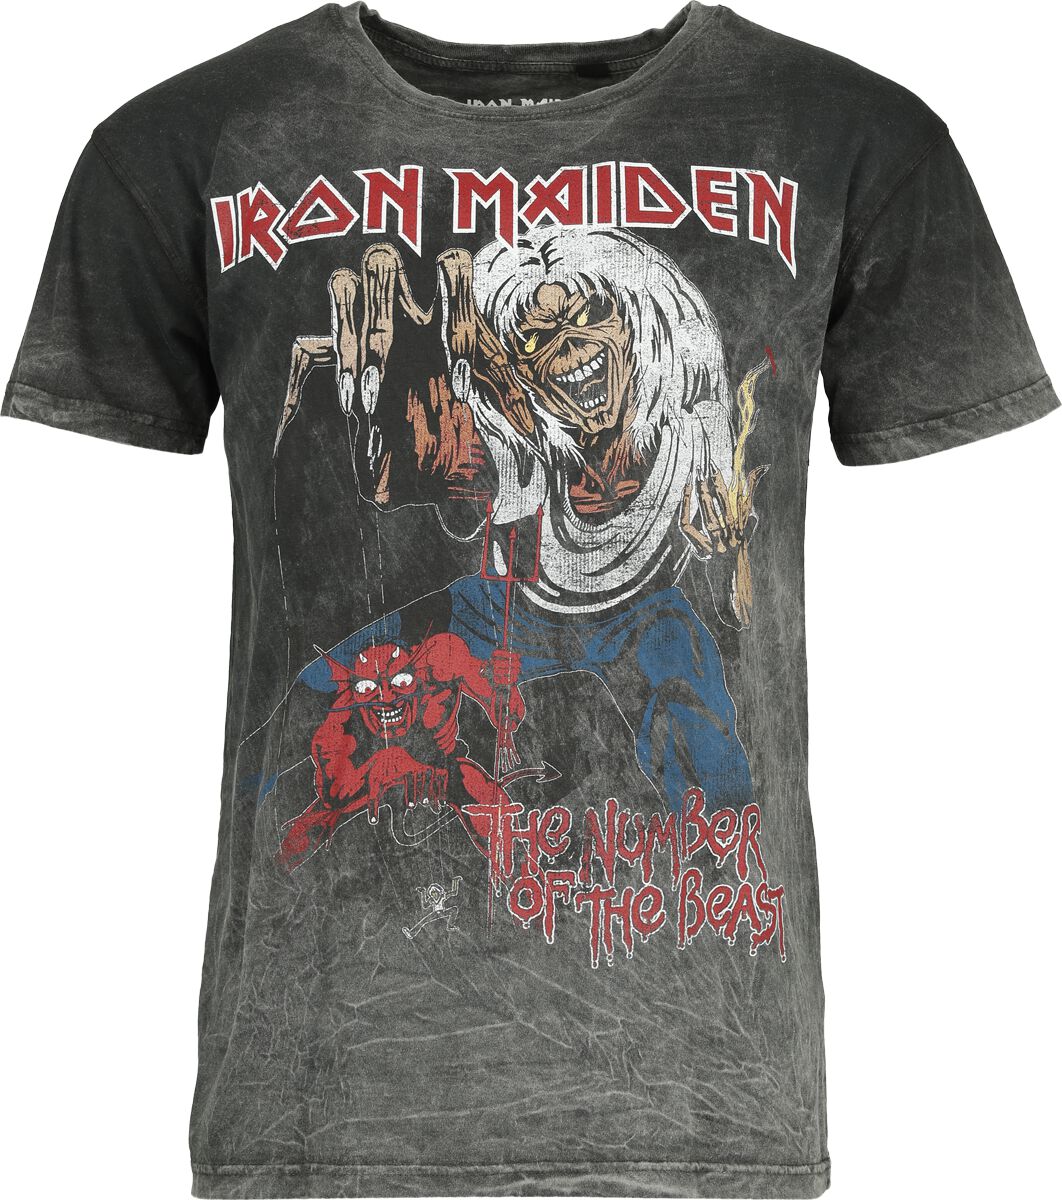 Iron Maiden T-Shirt - The number of the beast - S bis XL - für Männer - Größe S - grau  - Lizenziertes Merchandise!